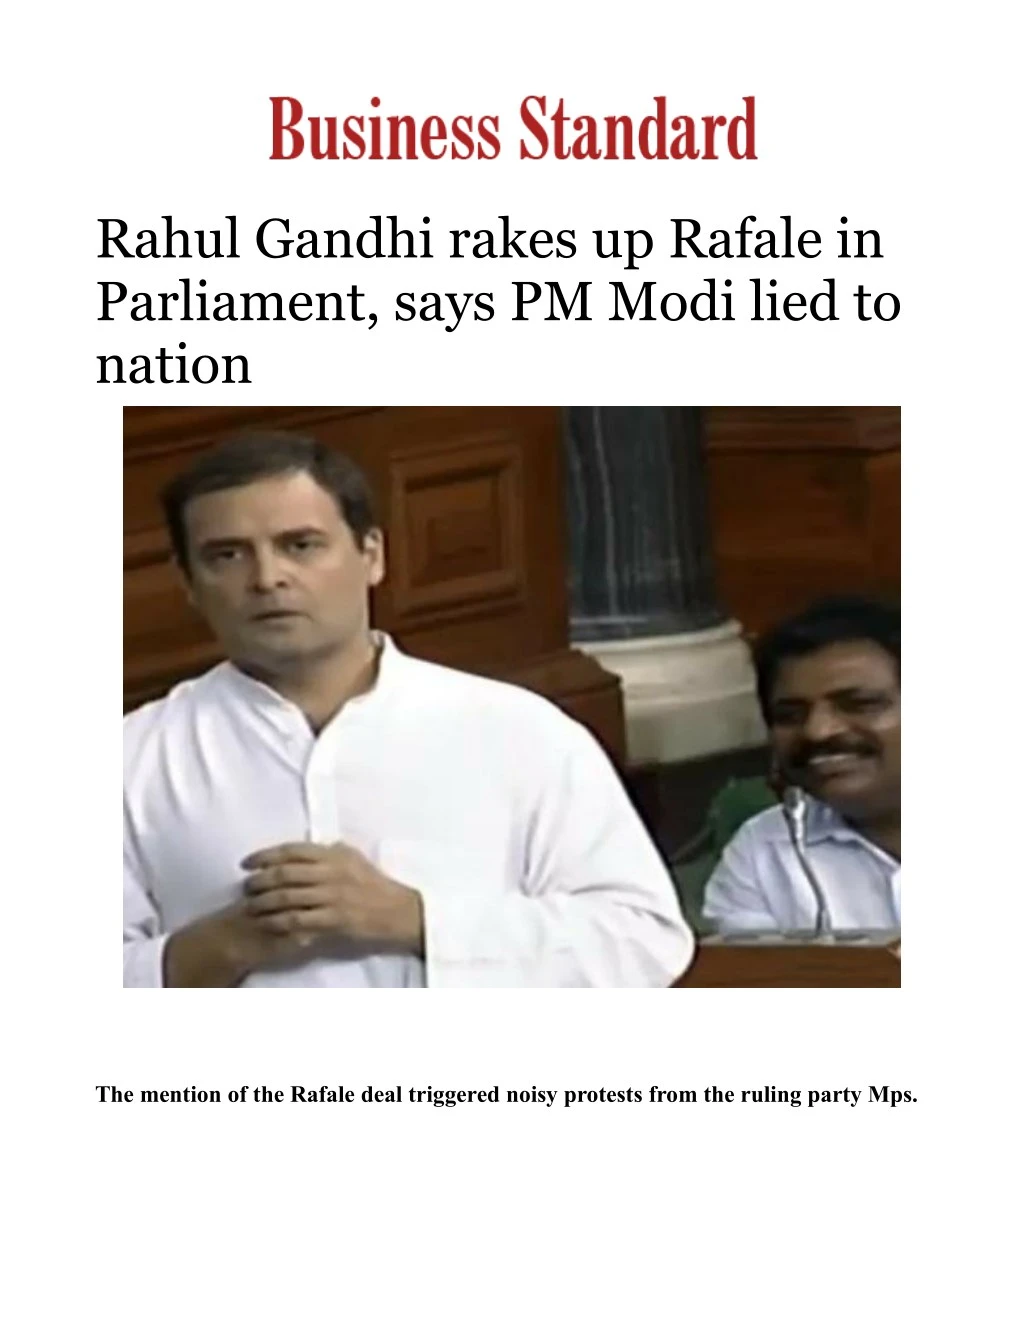 rahul gandhi rakes up rafale in parliament says